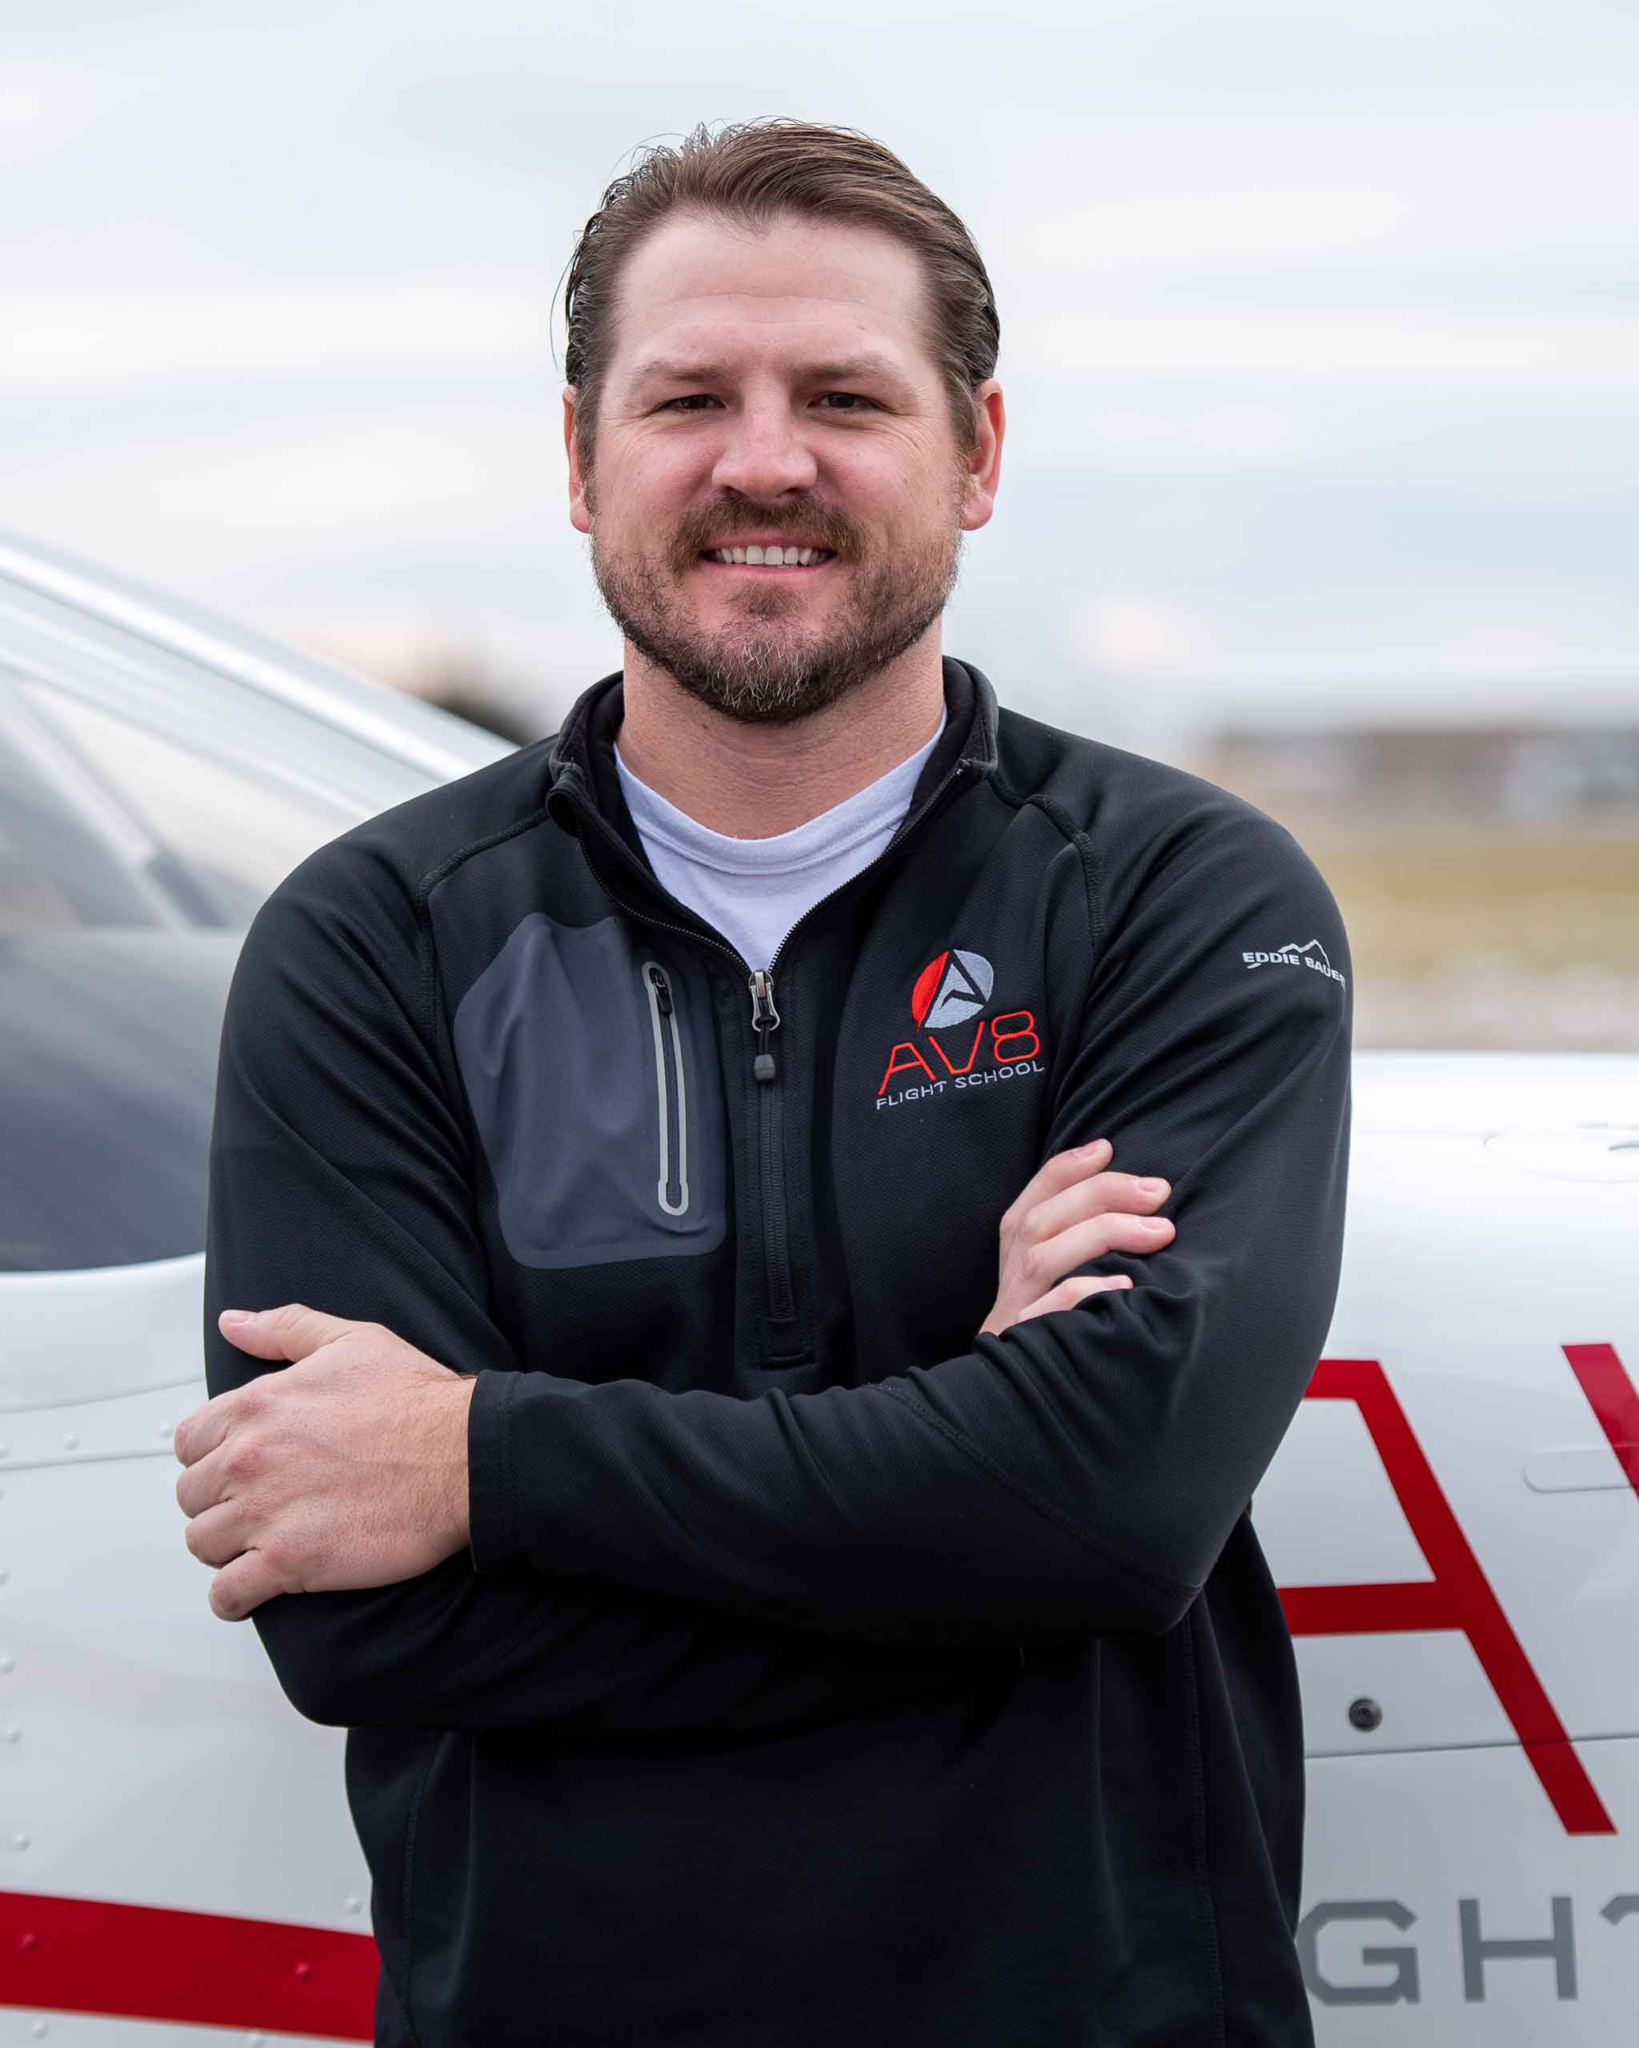 Ryan Lambert AV8 Flight Instructor